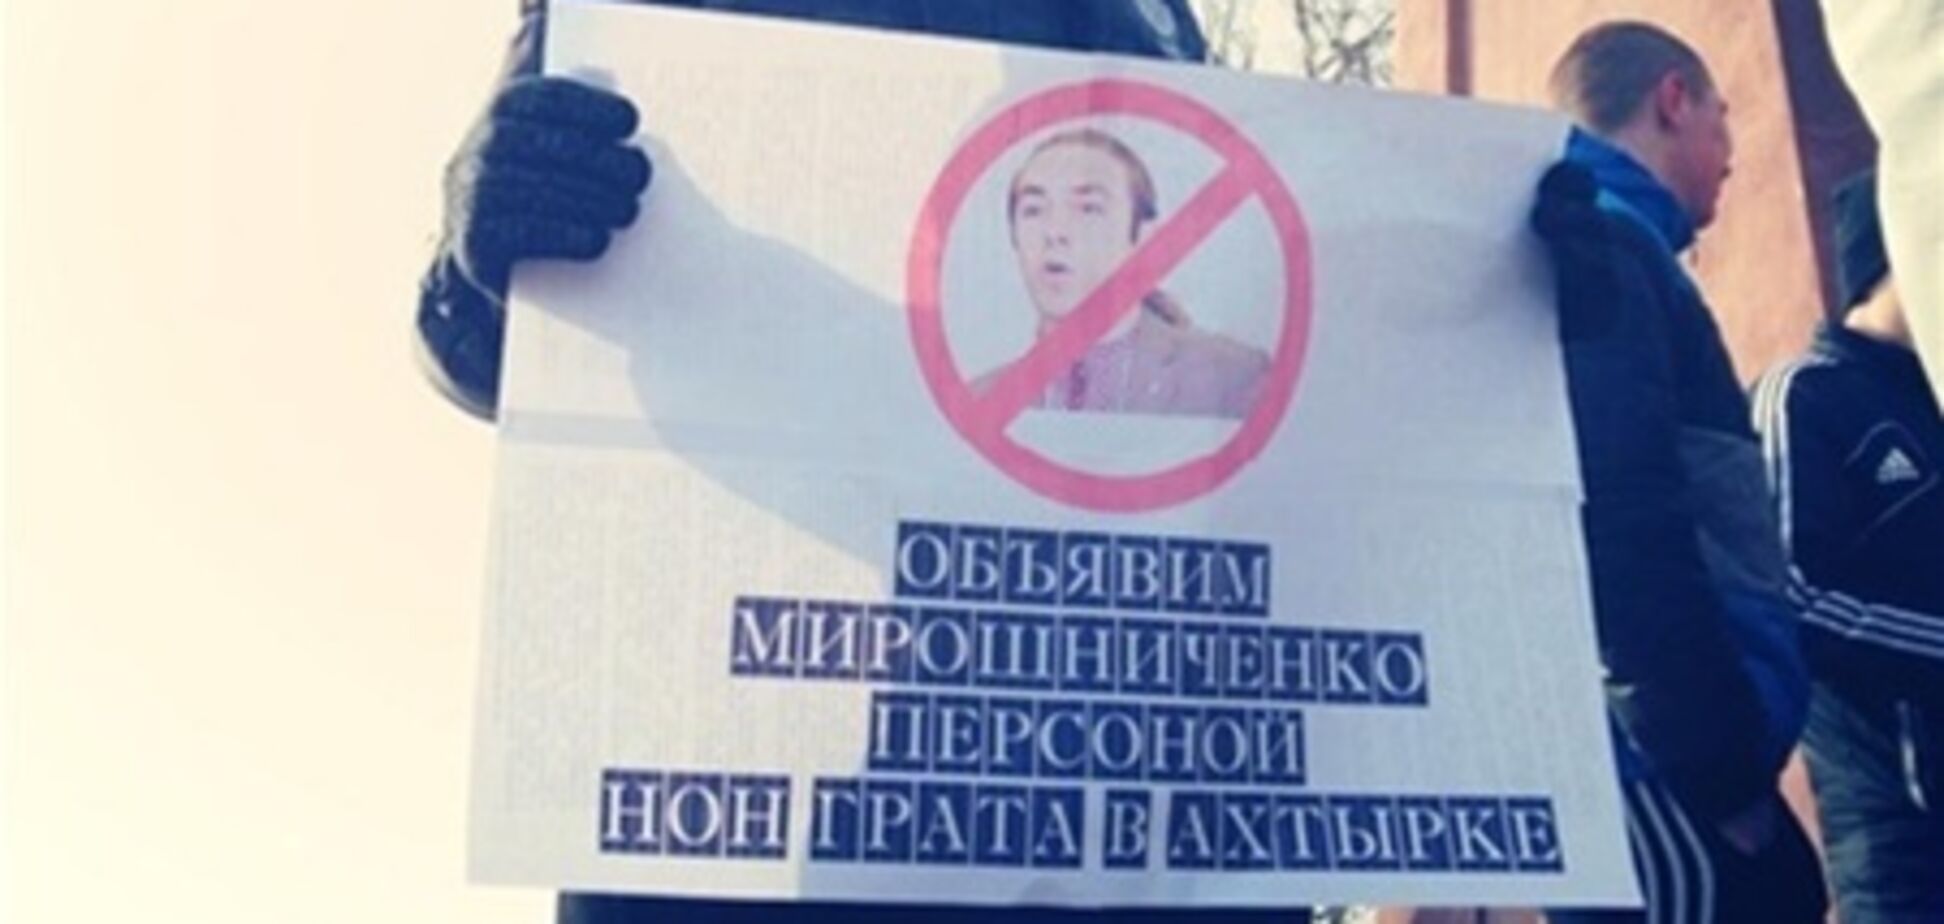 КПУ: жители Ахтырки подадут в суд на Мирошниченко